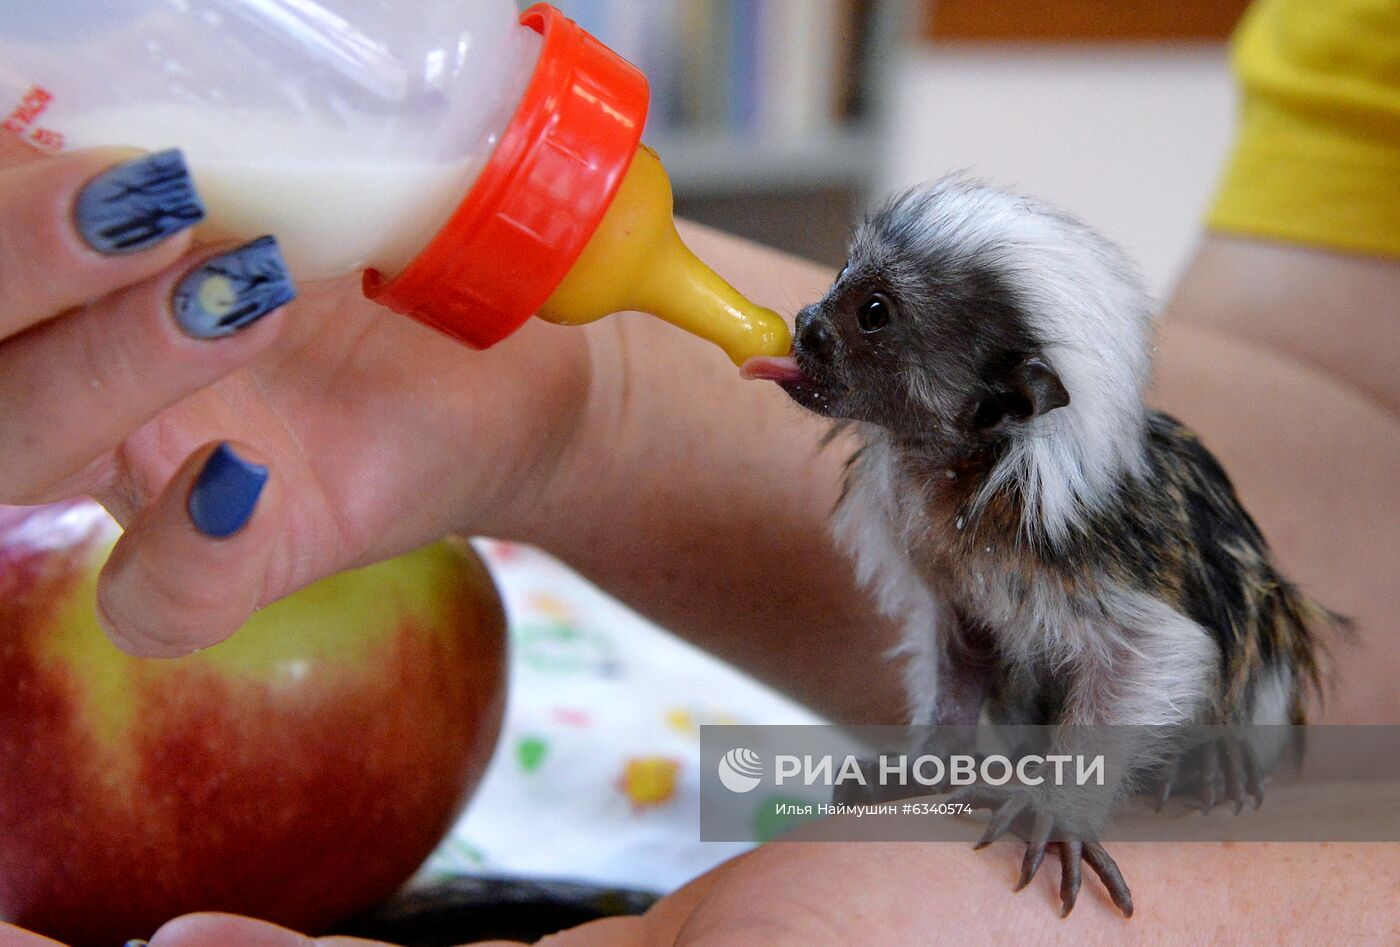 Родившиеся в этом году обитатели зоопарка "Роев ручей" в Красноярске